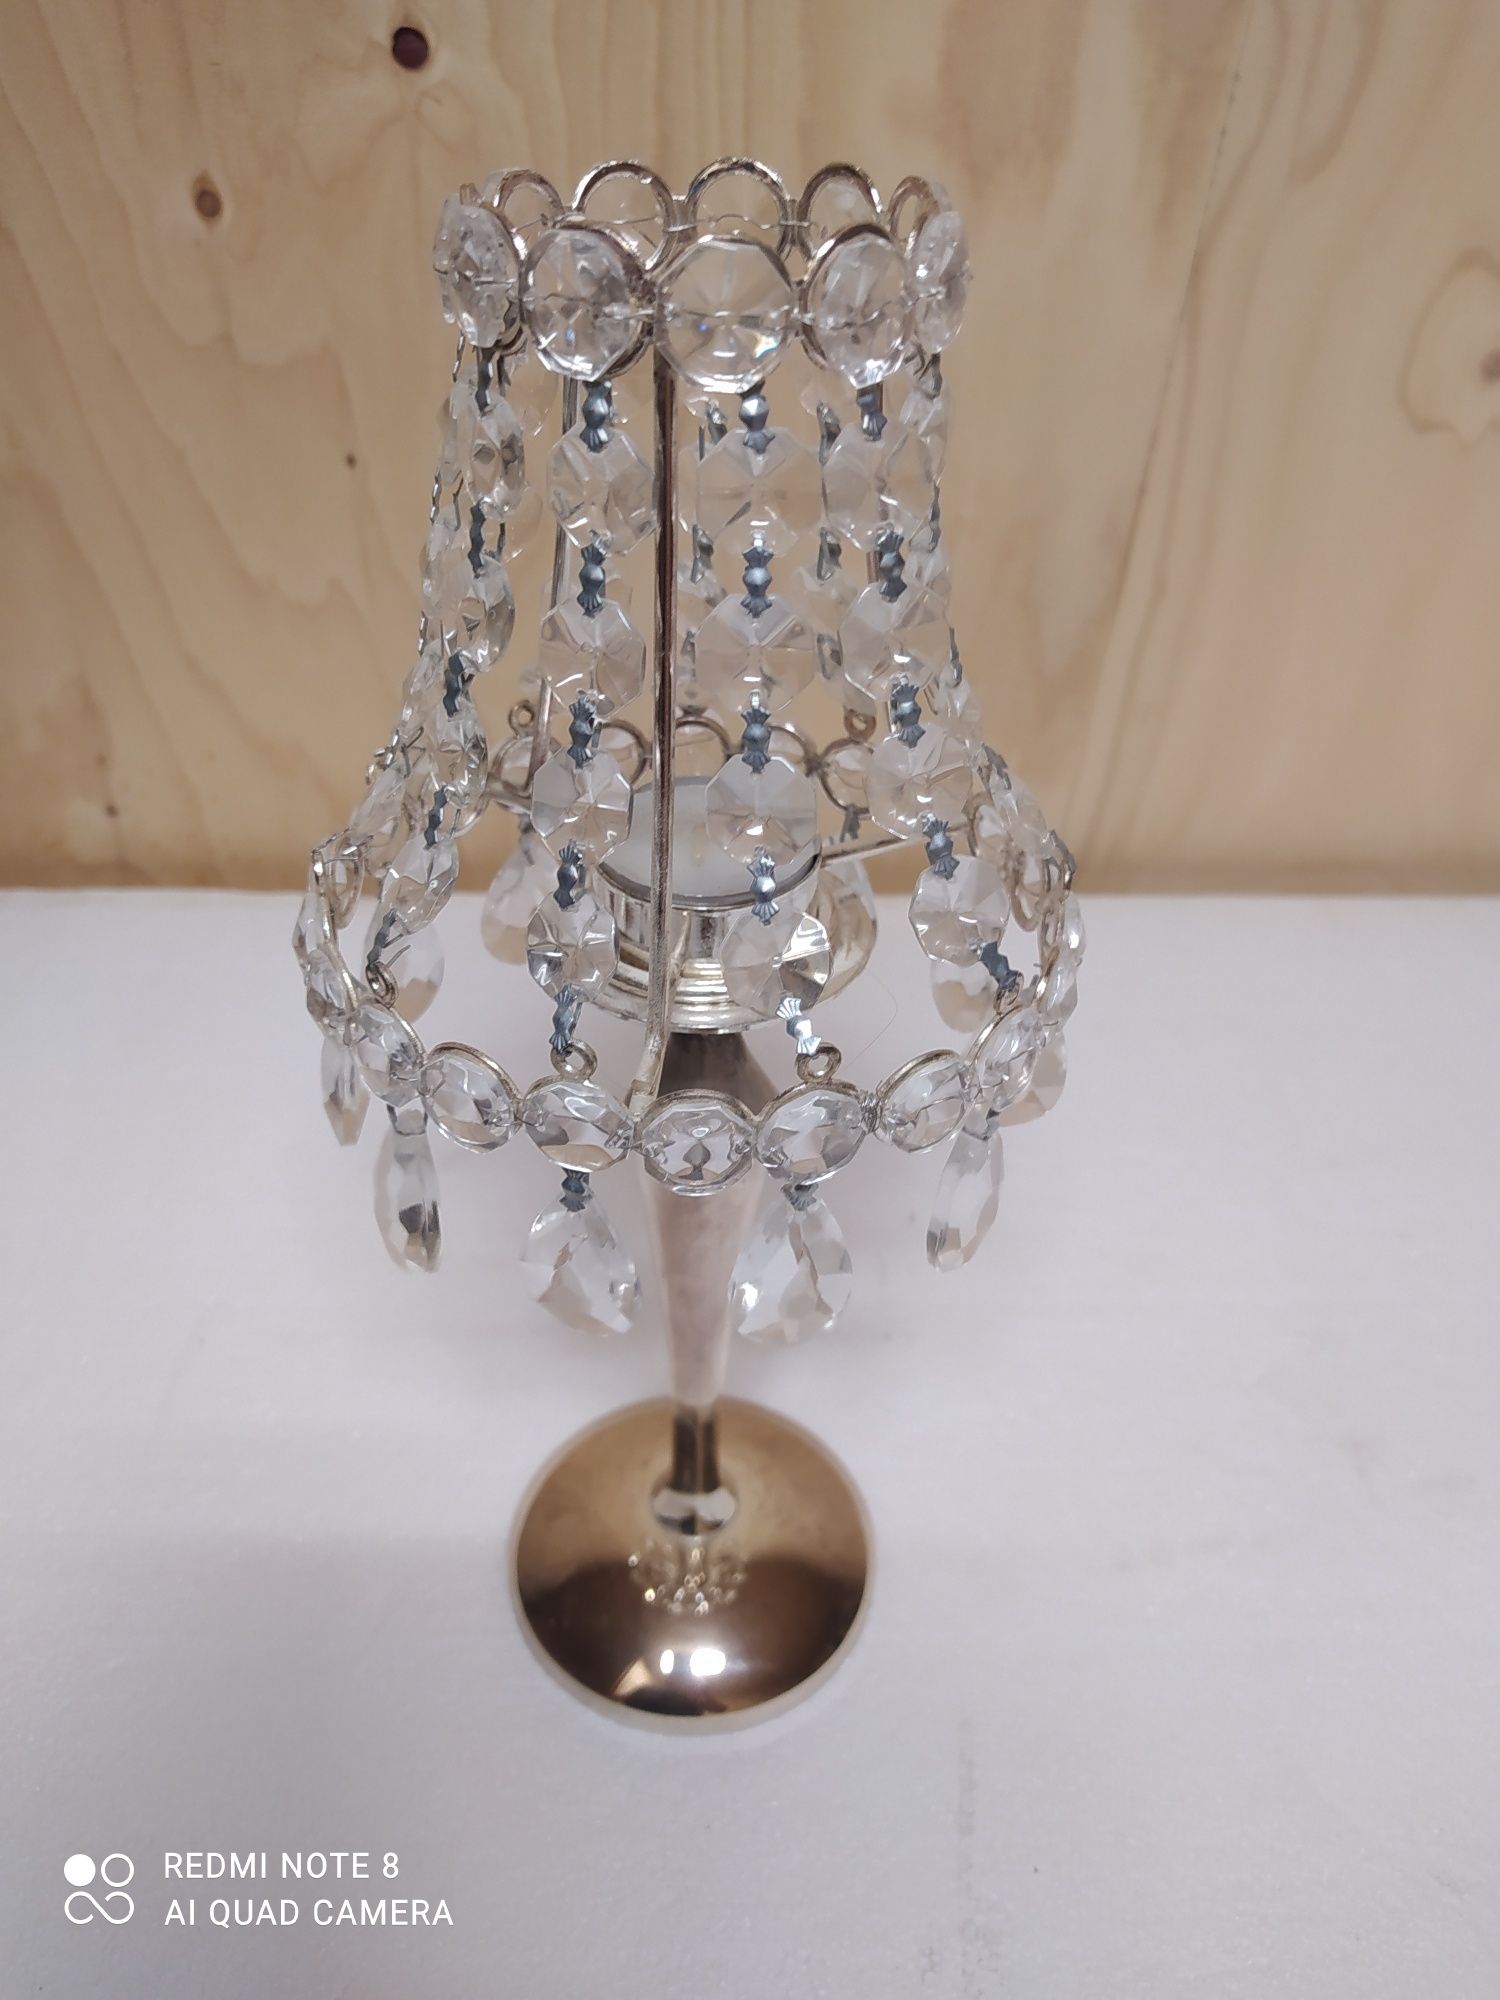 Piękna lampka z kryształkami na podgrzewacz, świeczkę